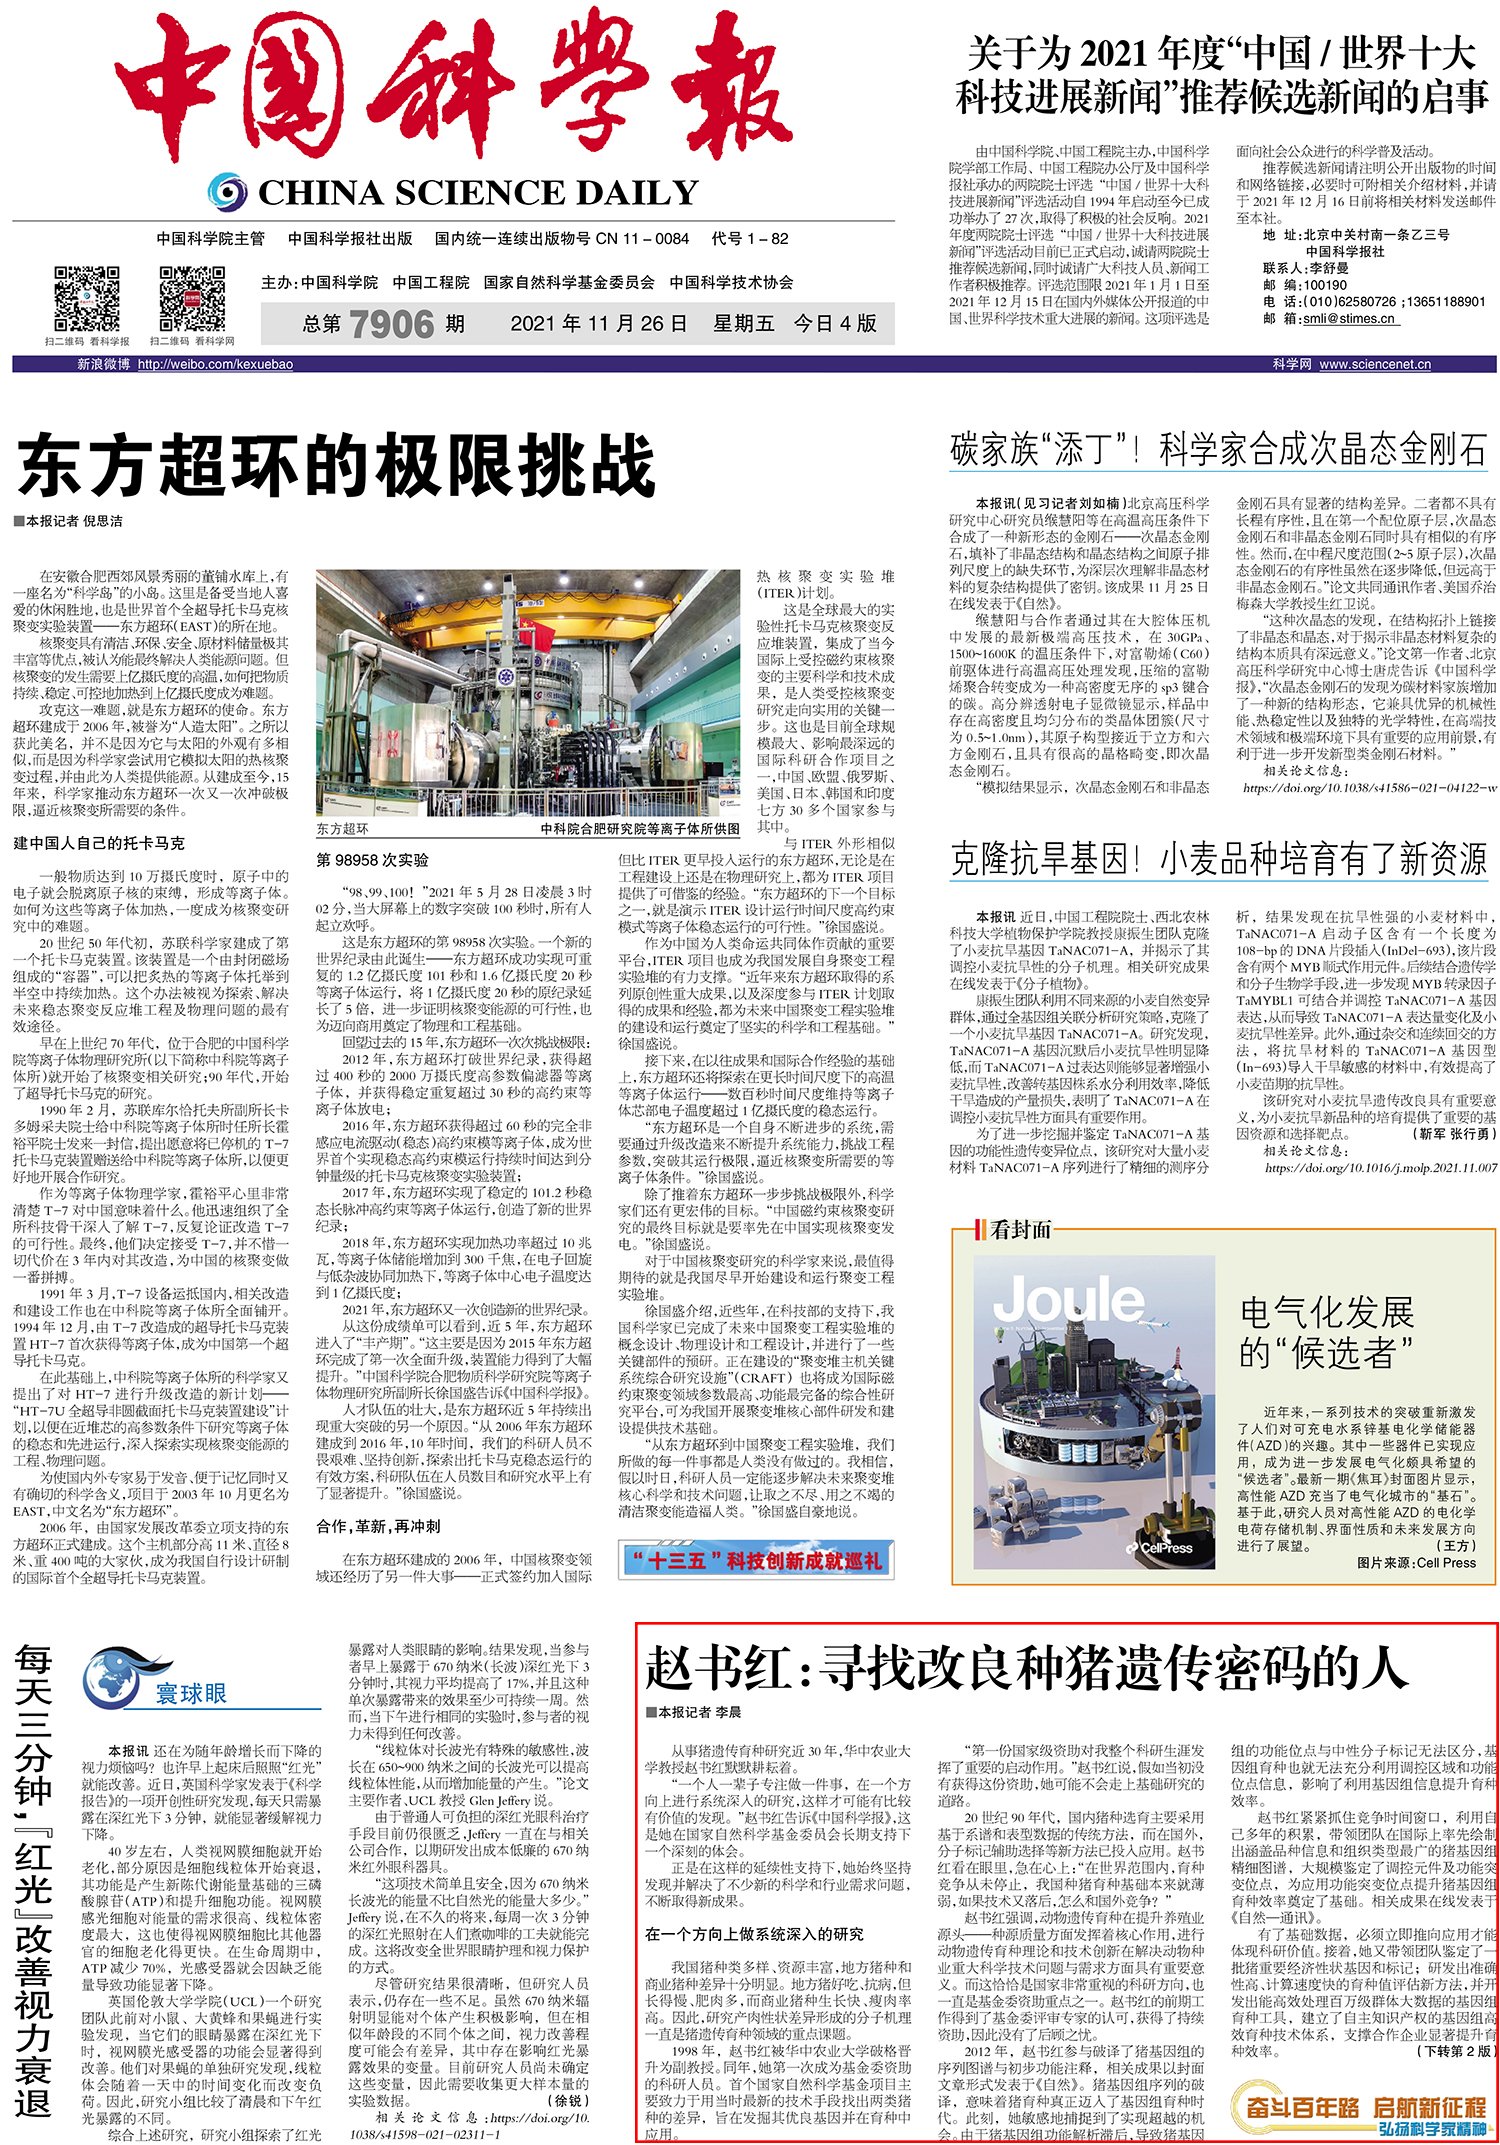 《中国科学报》2021年11月27日第一版报道了我校动科动医学院院长赵书红教授的事迹